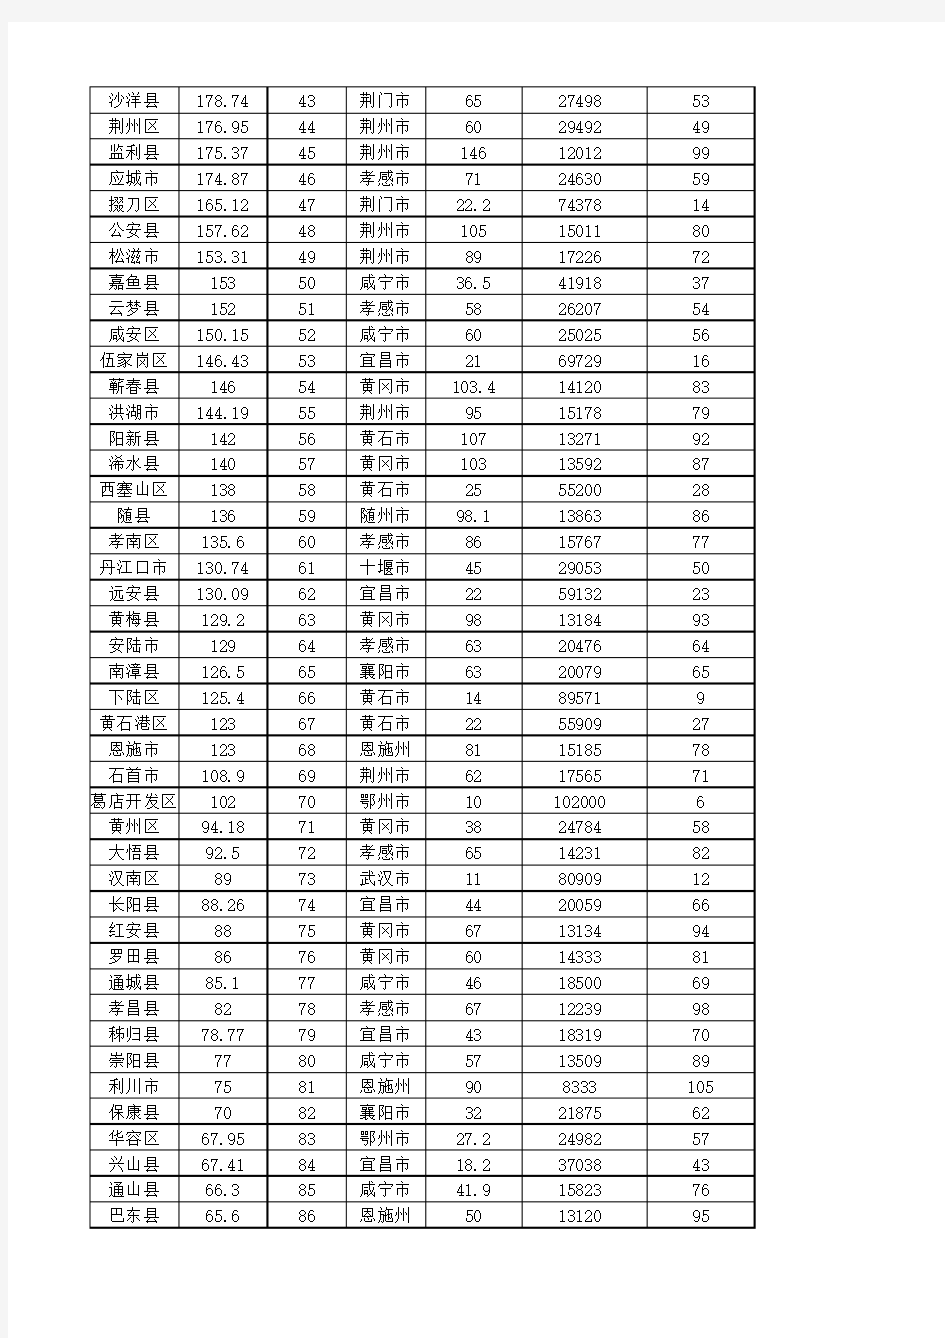 2012年湖北县级市GDP排名